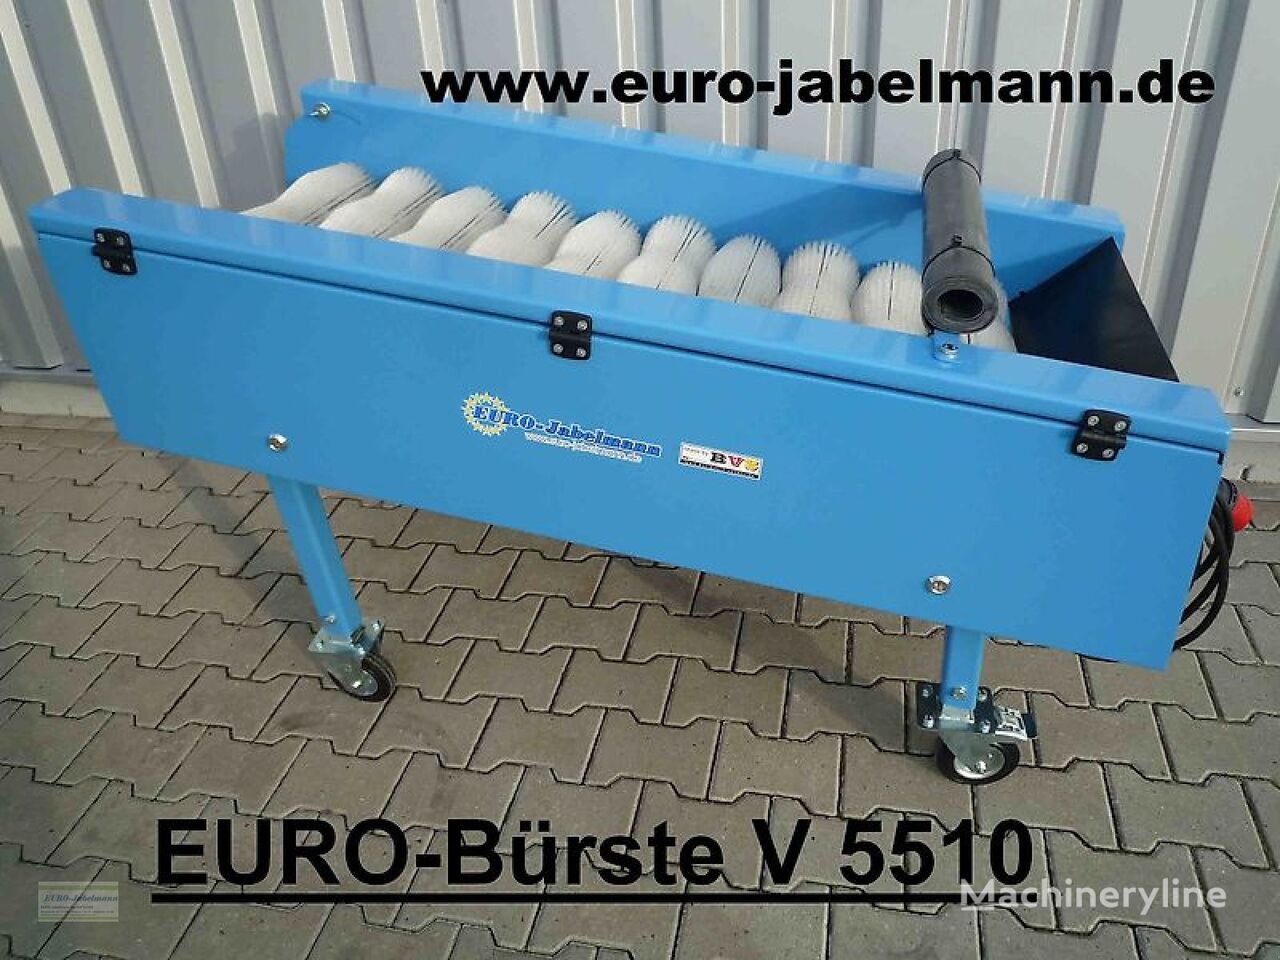 جديد ماكينة غسيل الخضروات EURO-Jabelmann 550 - 2200 mm breit, eigene Herstellung (Made in Germany)